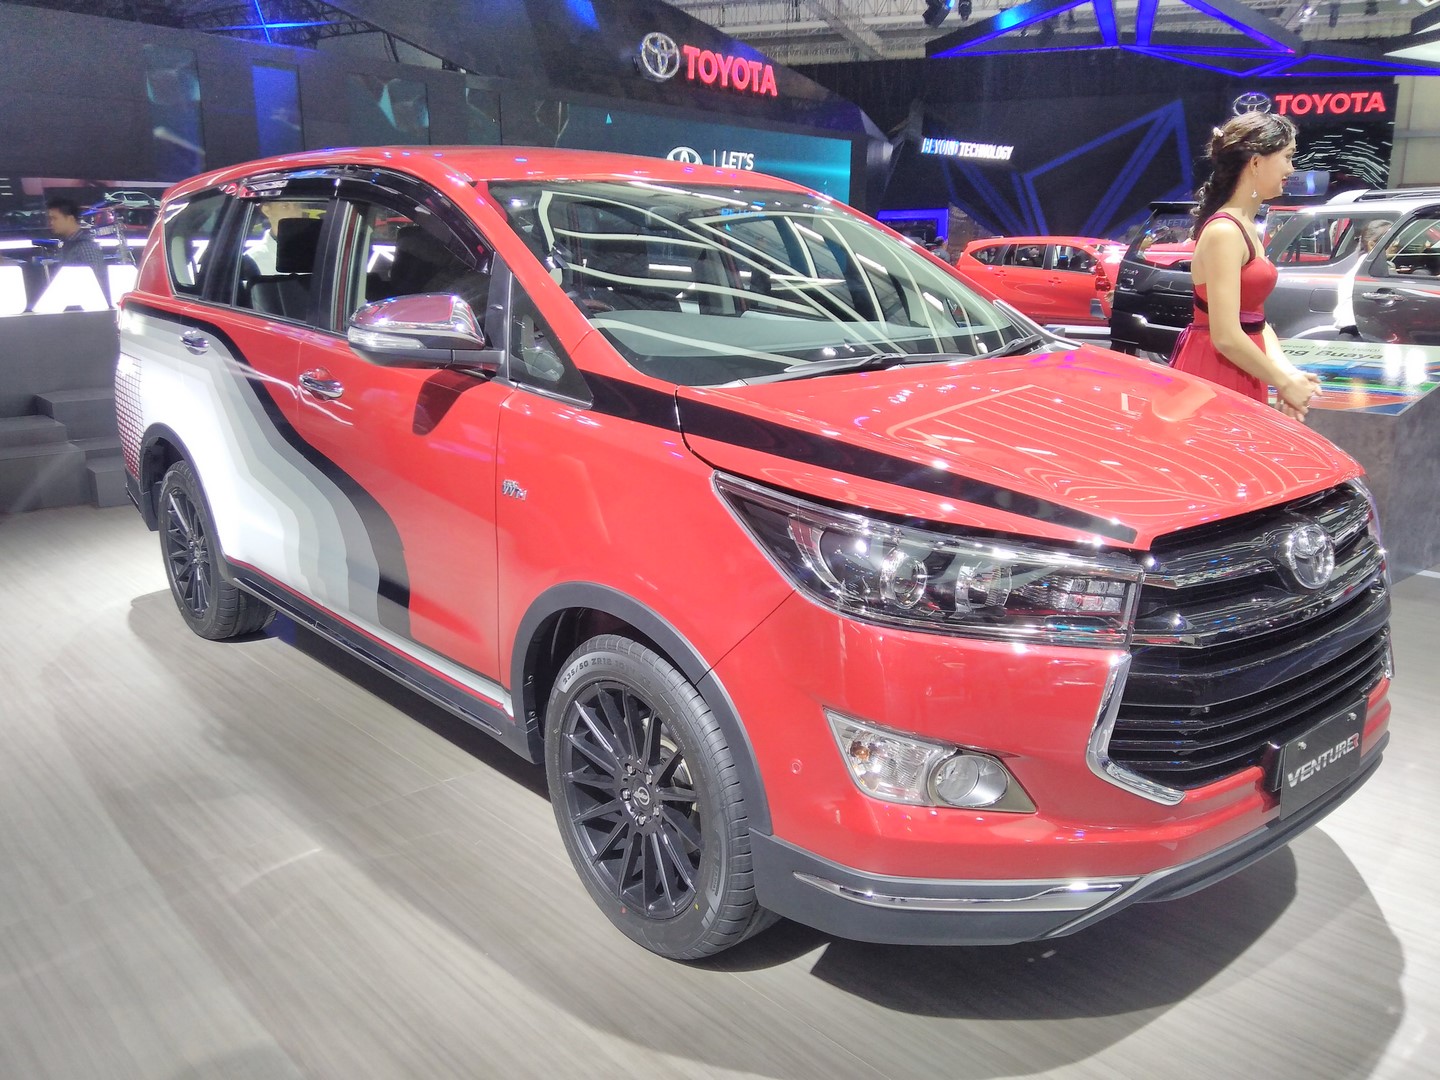 Toyota Innova Venturer with body graphics GIIAS 2022 Live